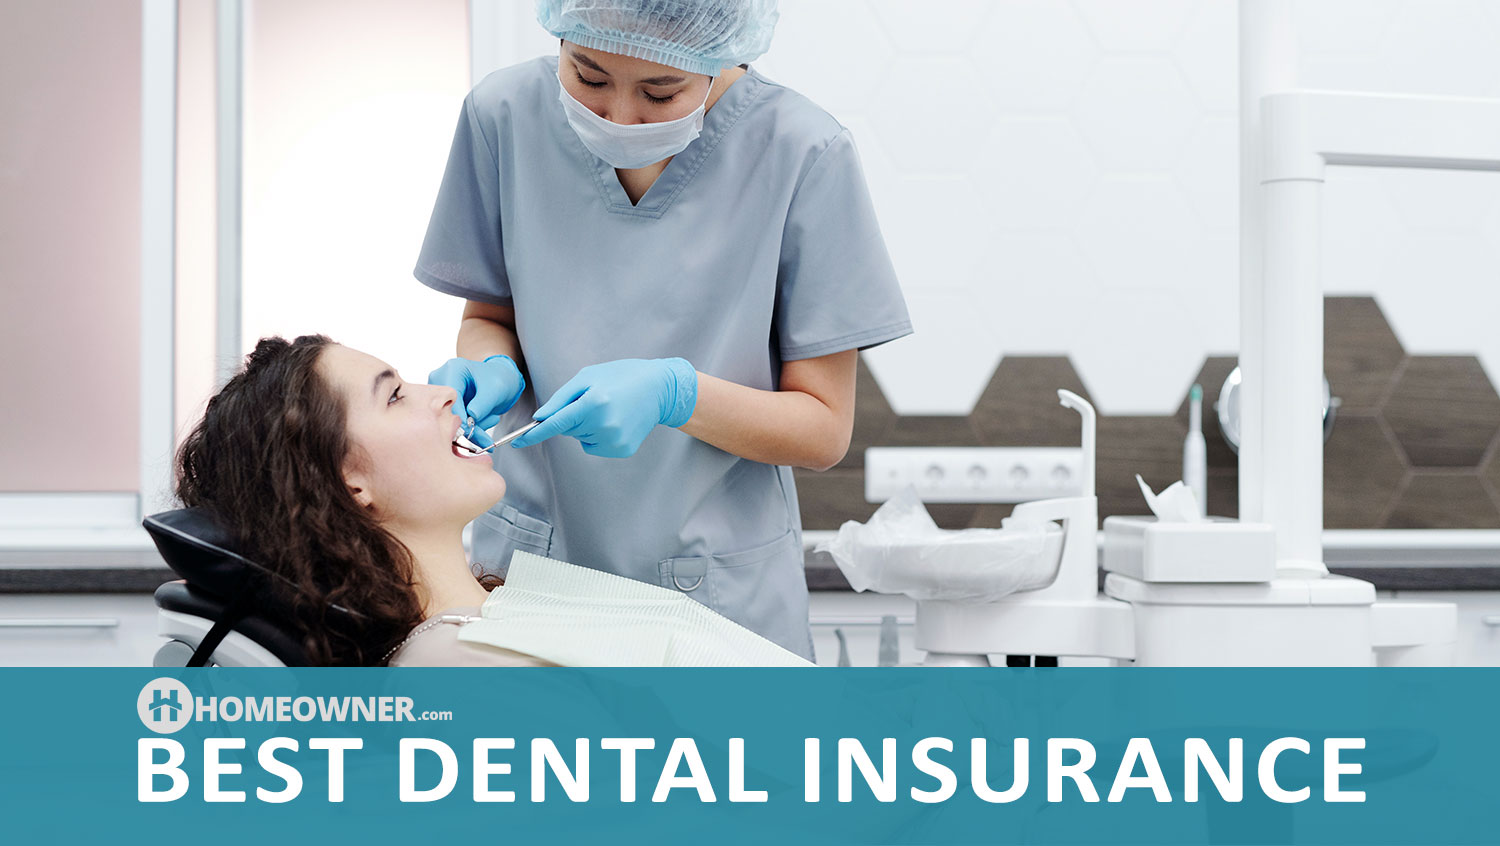 Best Dental Insurance in 2022